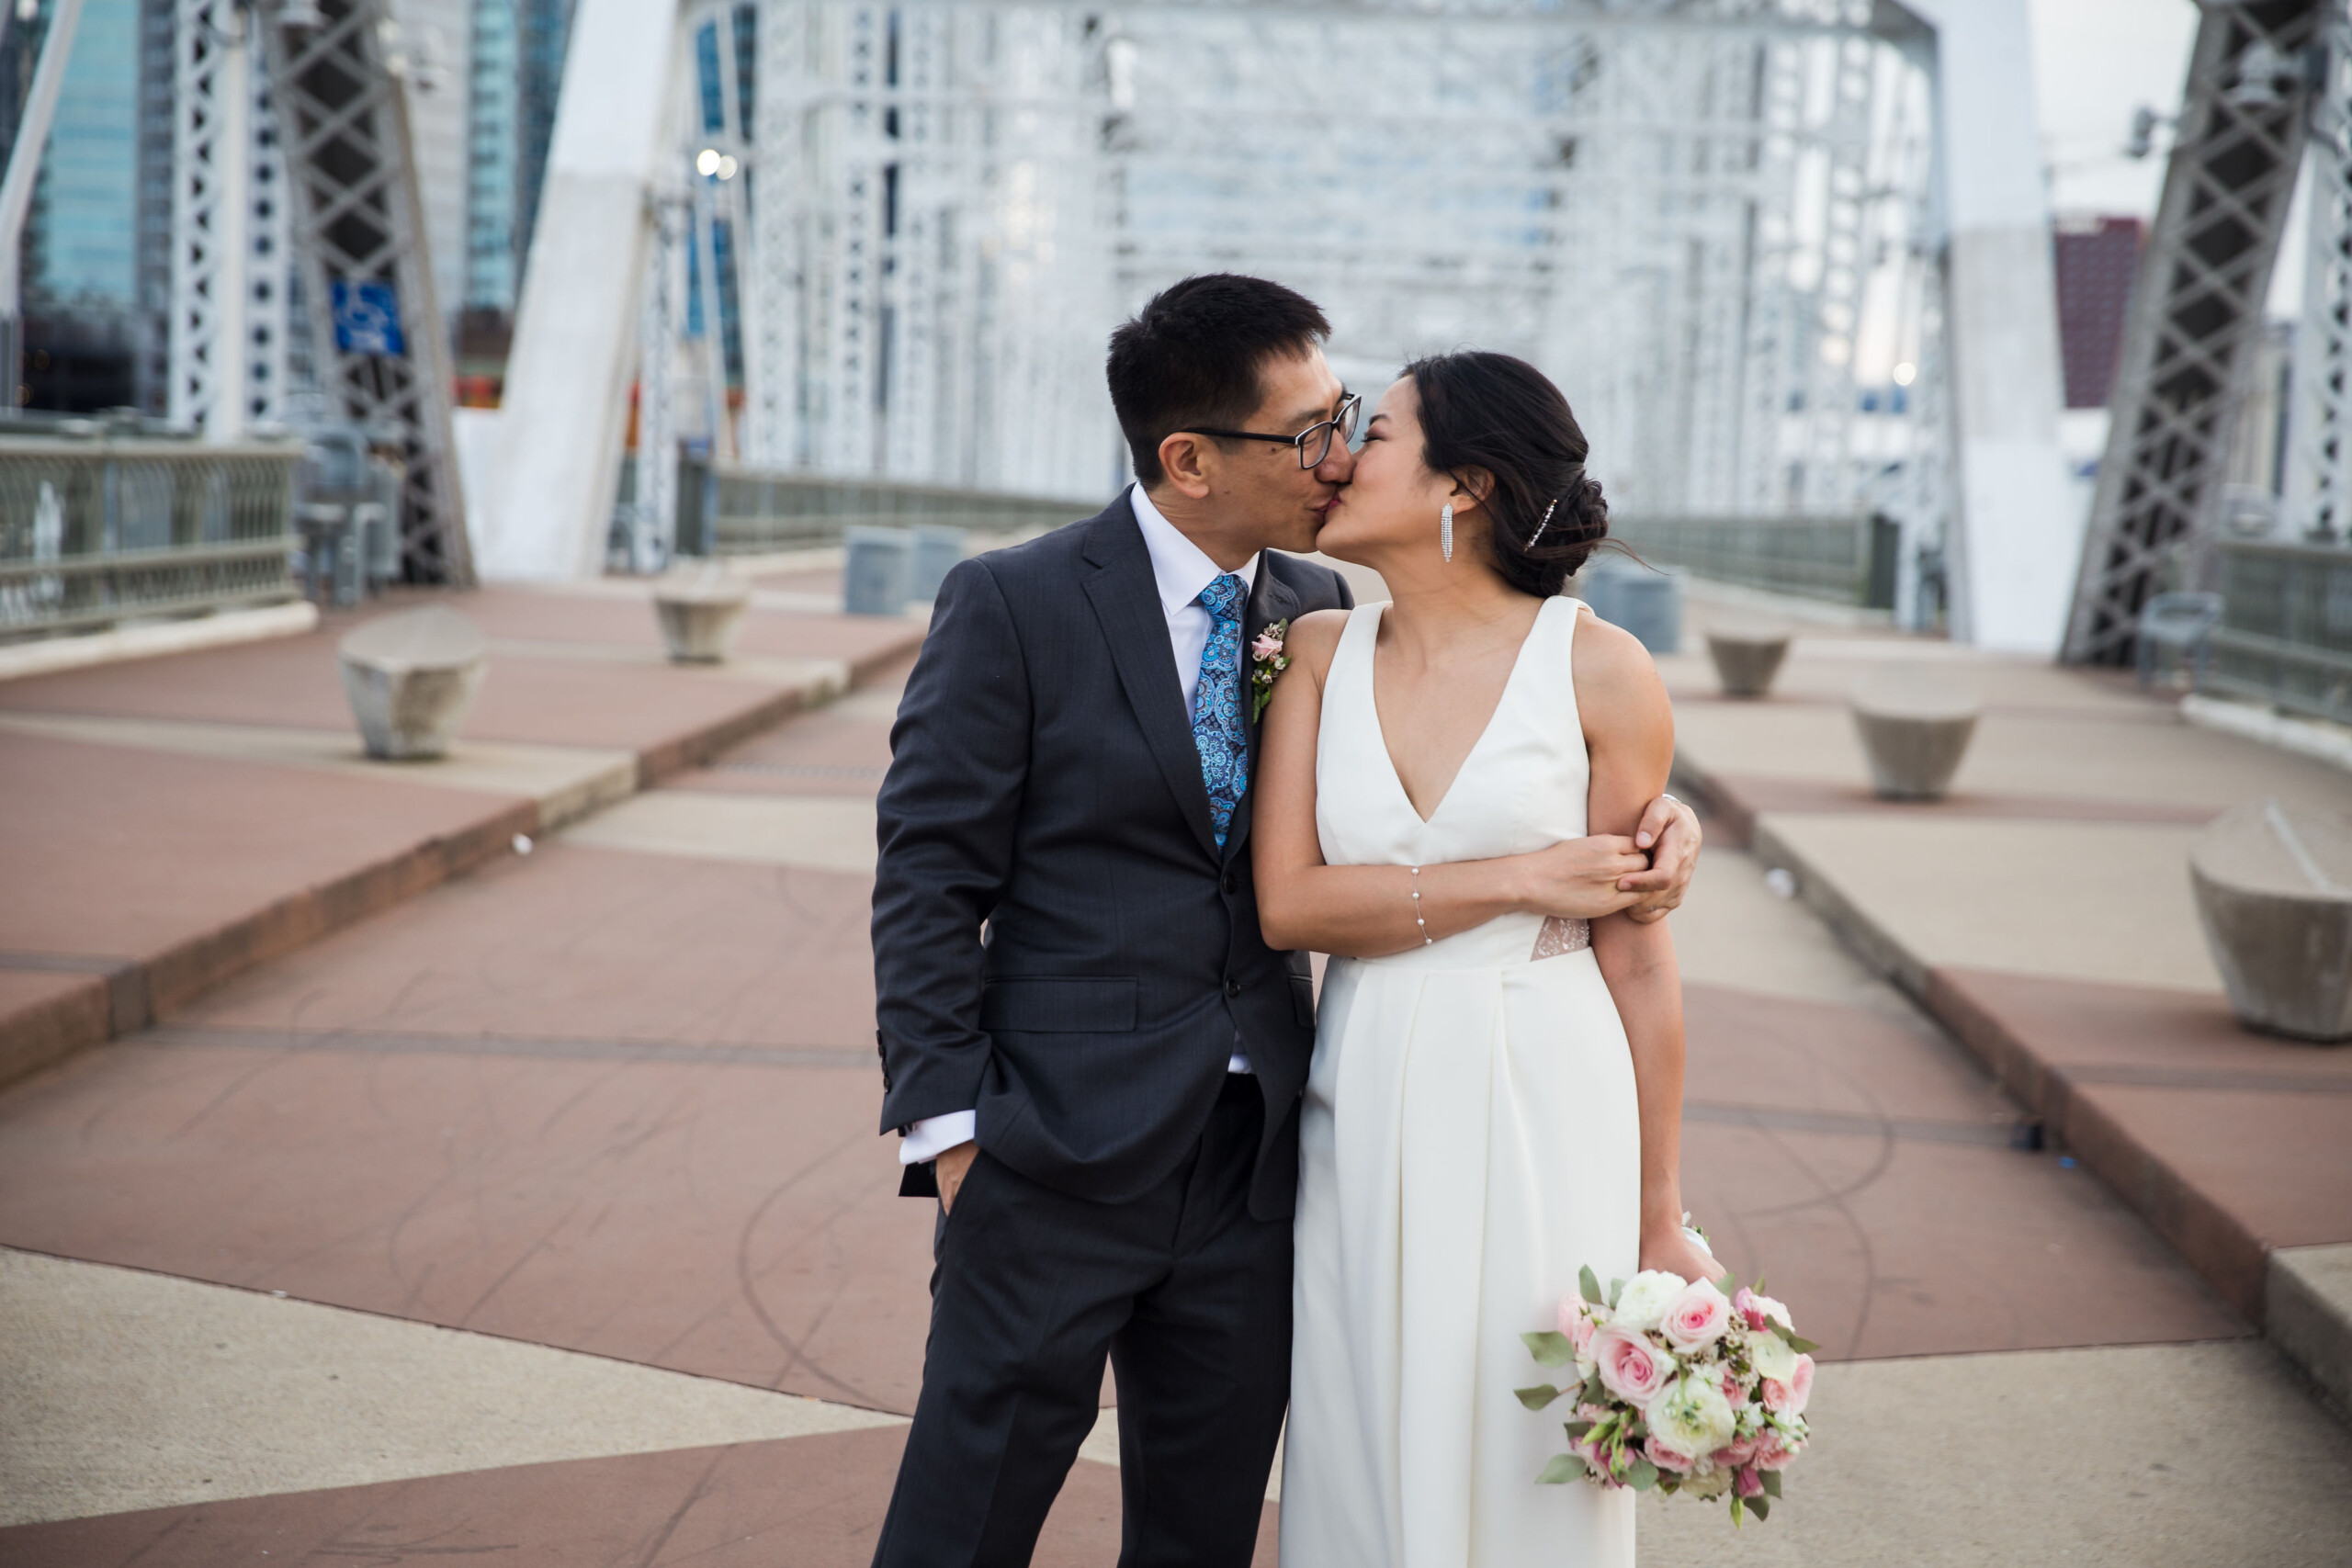 Love Finds A Way – Mindy & Li’s Nashville Wedding Story